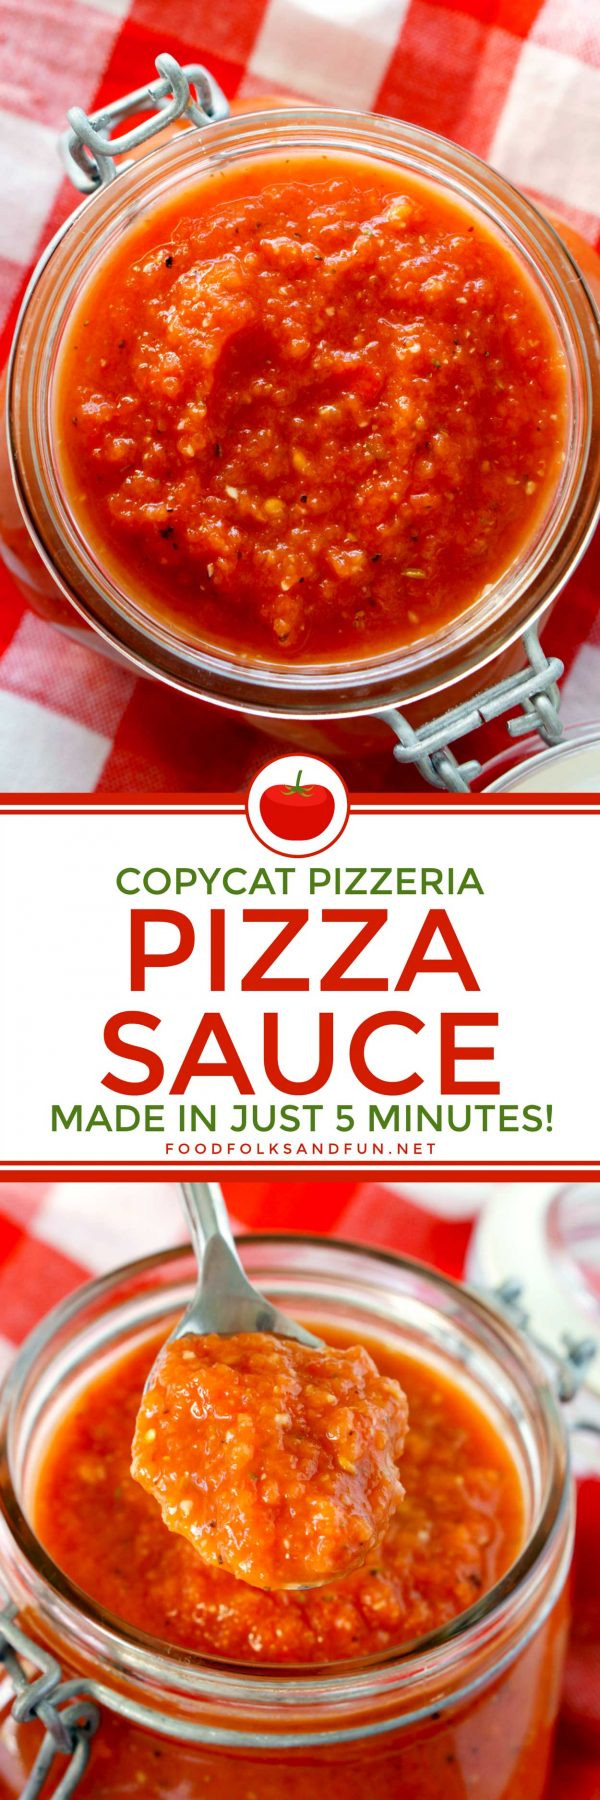 Rao'S Pizza Sauce
 Copycat Pizzeria Pizza Sauce Recipe • Food Folks and Fun